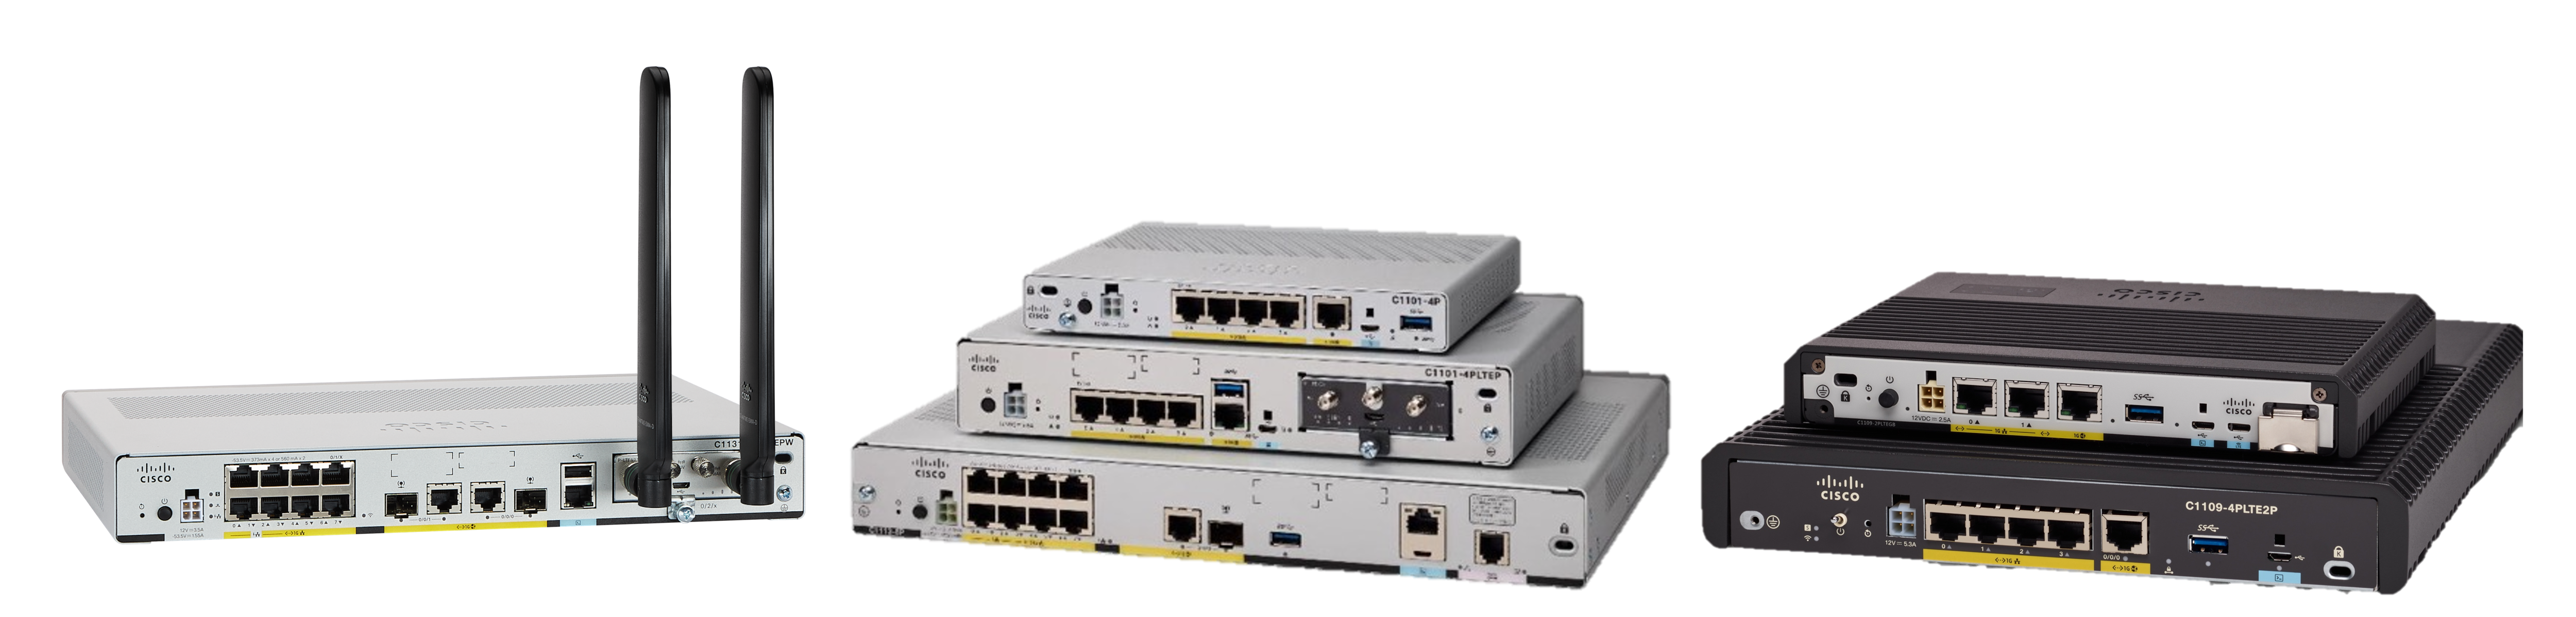 Cisco ASR1006 Router - Cisco ASR 1000 Router - 1